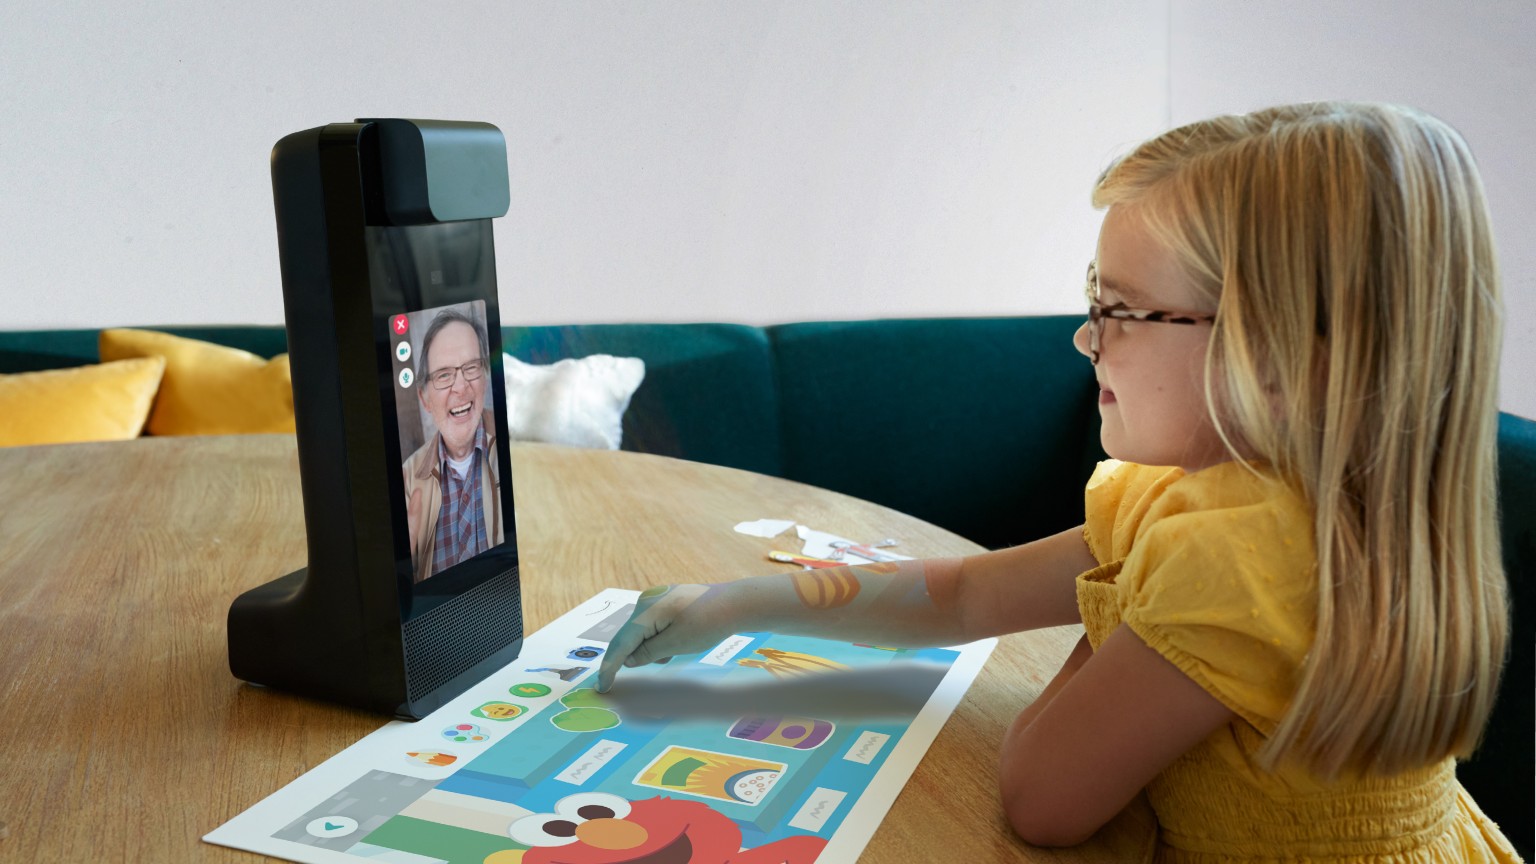 Устройства от Amazon – робот, экран для детей и умная рамка